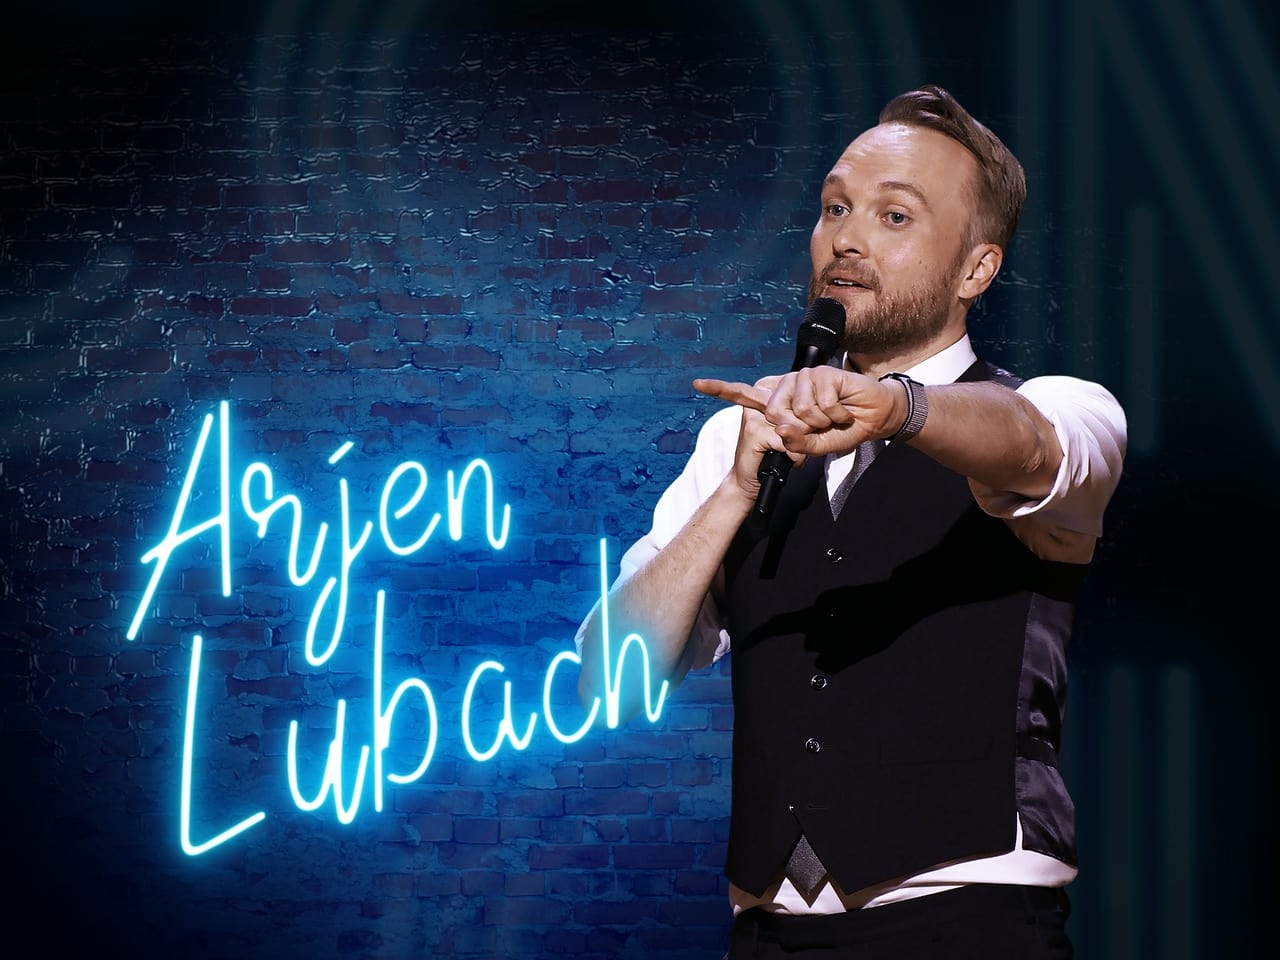 Arjen Lubach